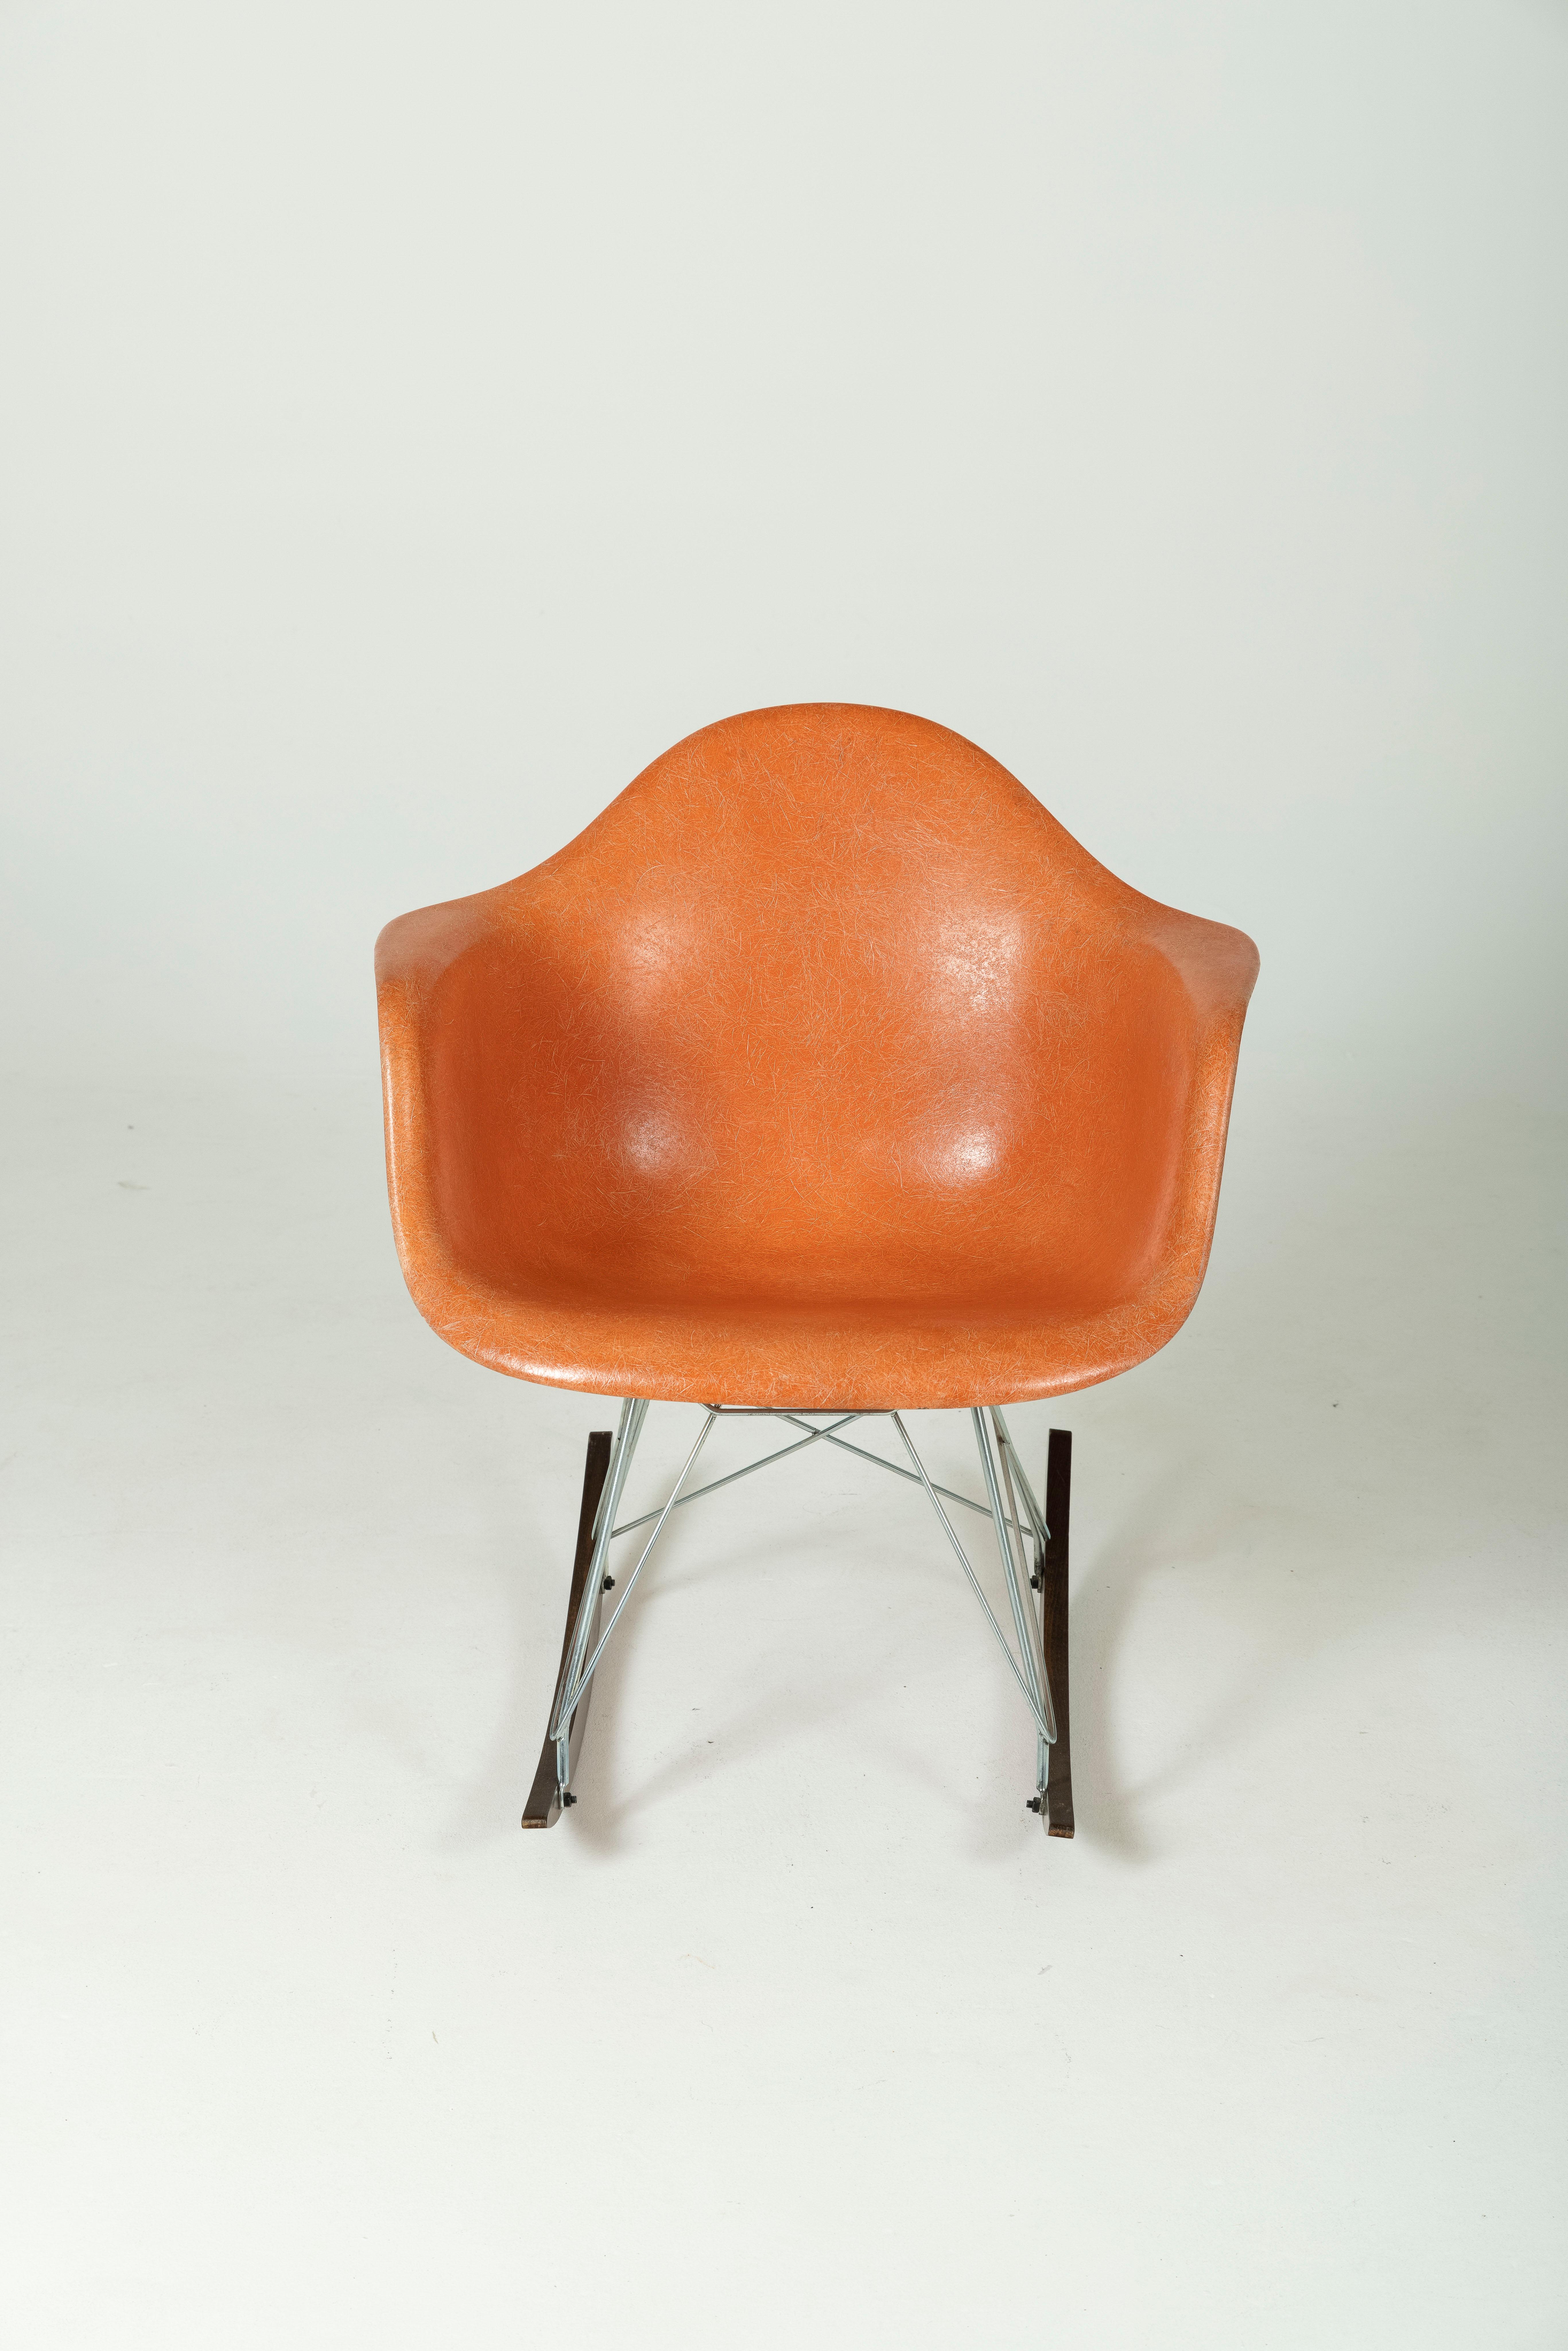 Fauteuil ou rocking-chair des designers Charles Eames (1907-1978) et Ray Eames (1912-1988) pour Herman Miller dans les années 1950. Bon état.
DV80